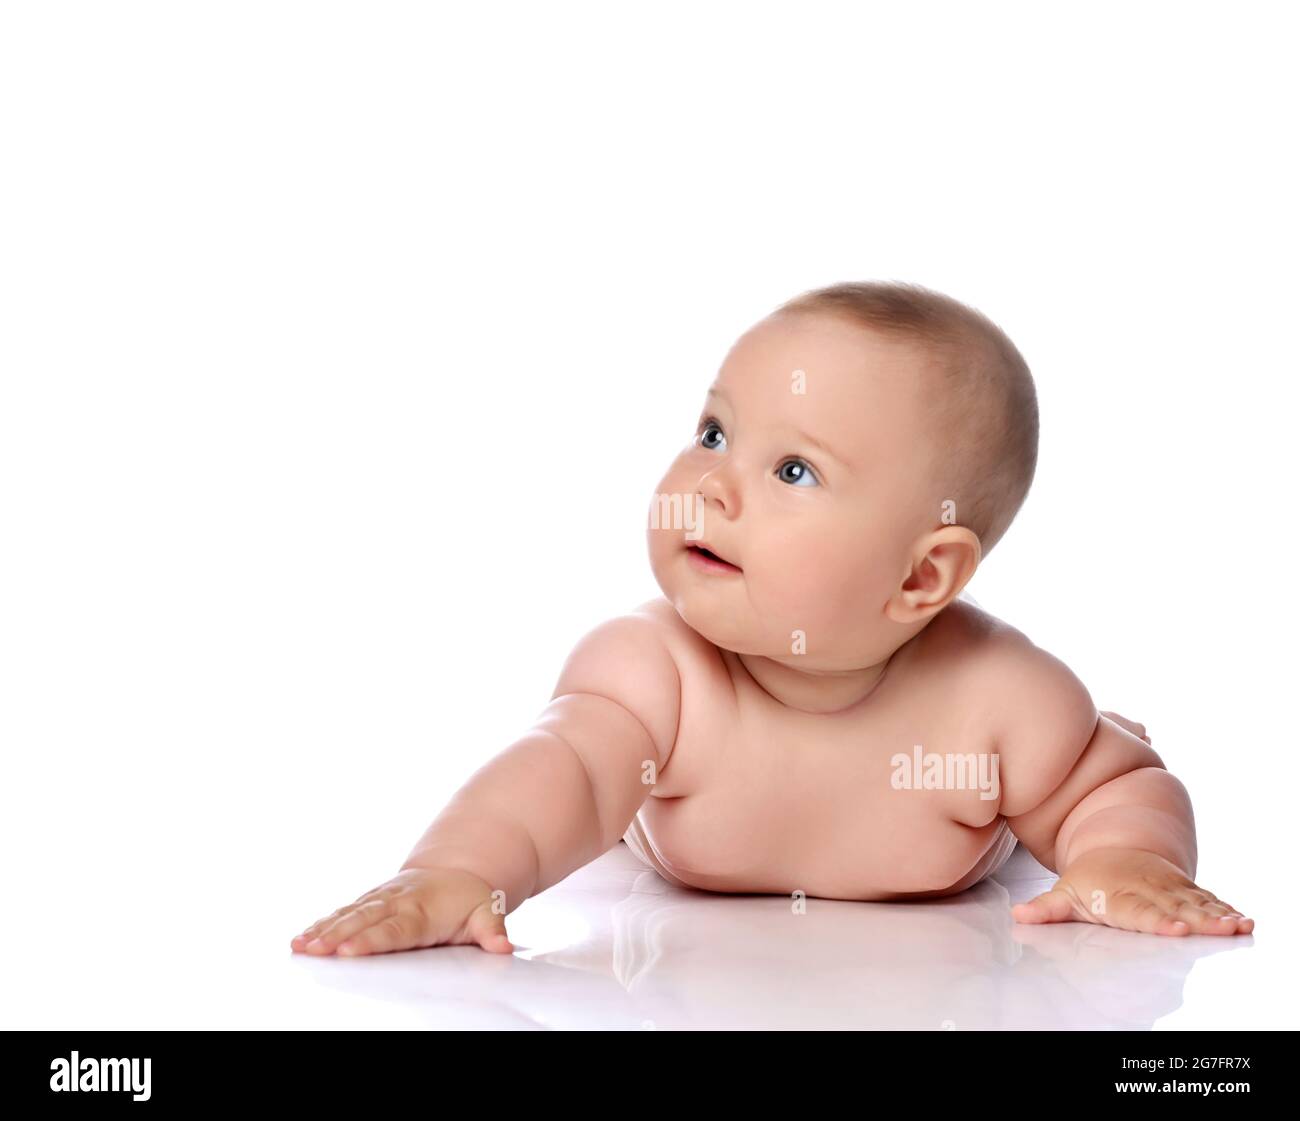 Neugierig Kleinkind Baby Mädchen Kind in Windel liegt auf ihrem Bauch mit ausgestrecktem Arm und Blick auf die obere Ecke Stockfoto